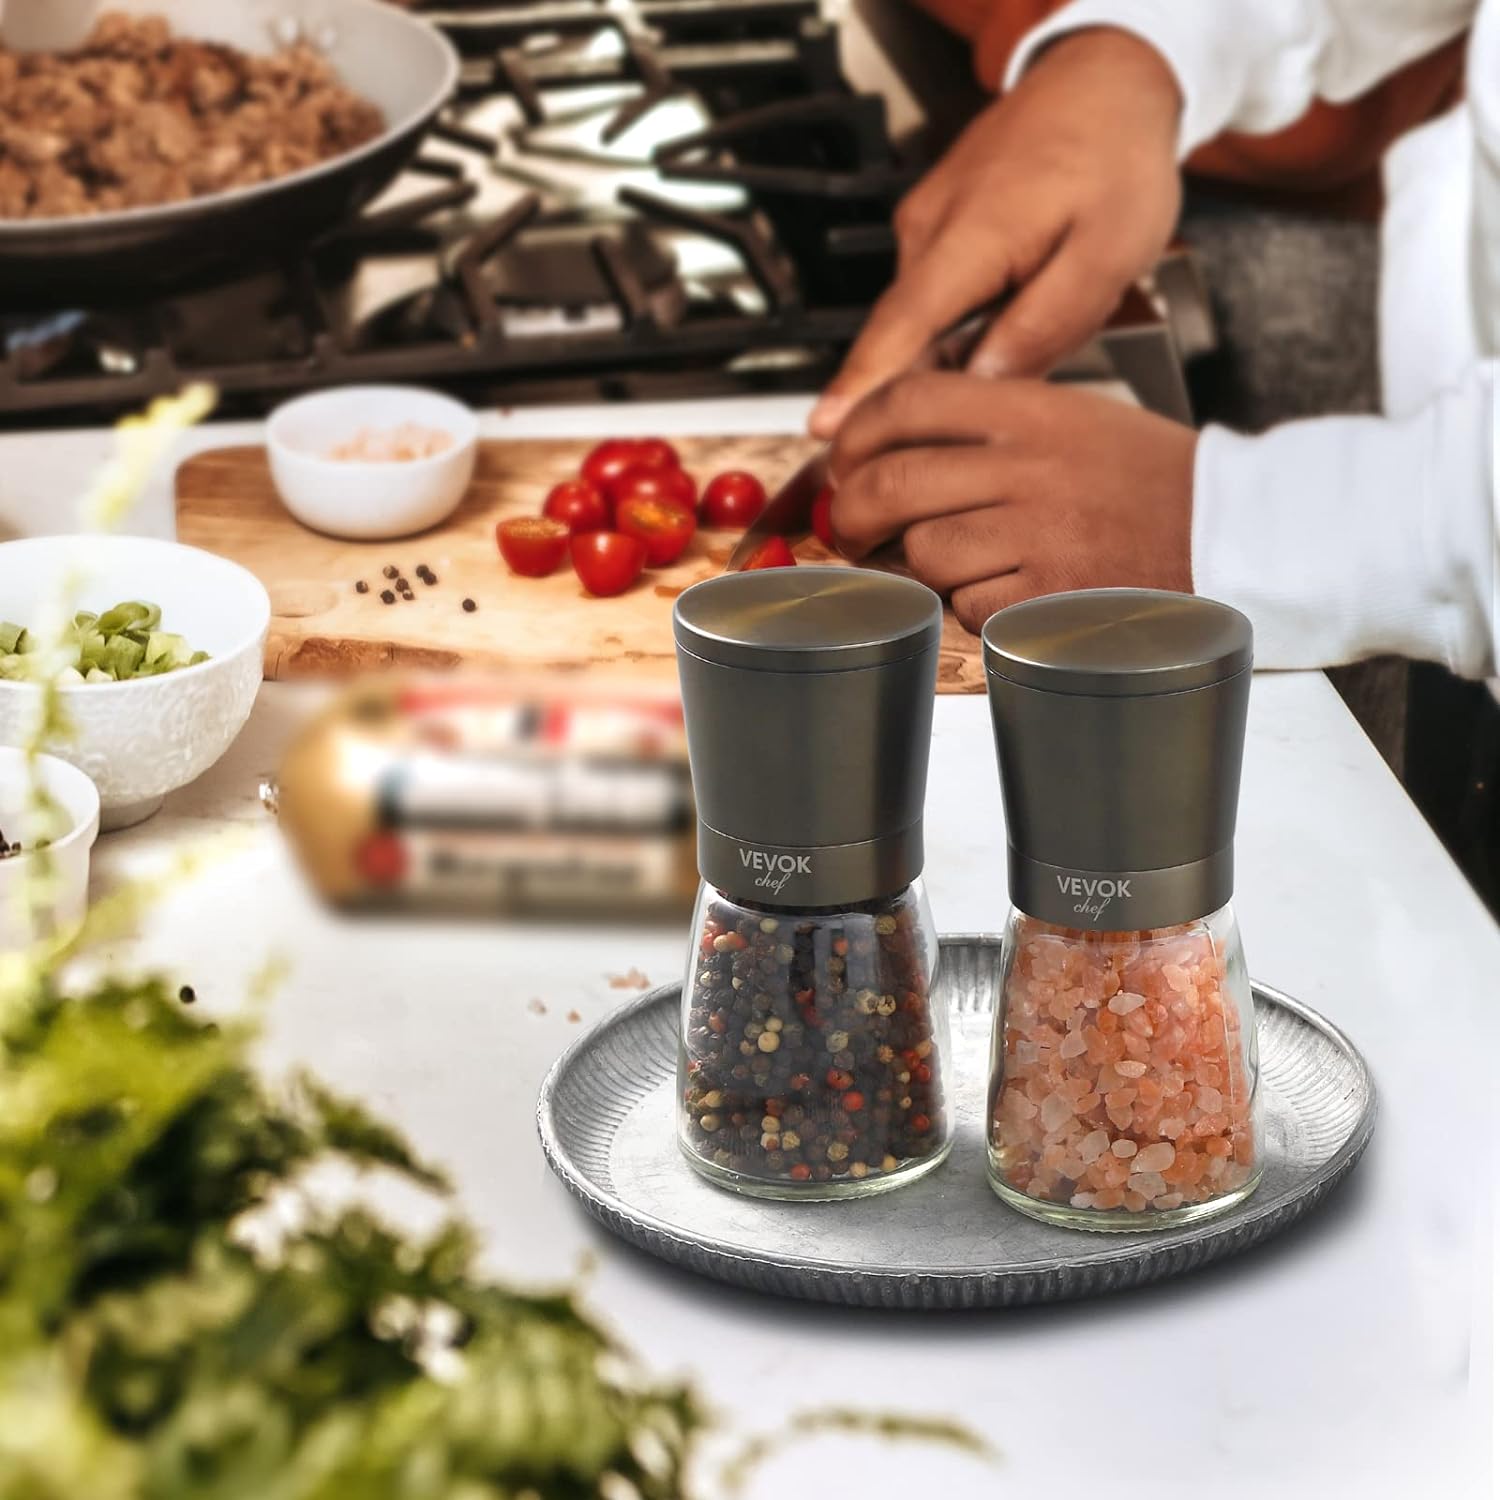 VEVOK CHEF Salt and Pepper Grinder Set Black Ceramic Spice Grinder with Adjustable Coarseness Pepper Mill Stainless Steel Salt Grinder Refillable Grinder Home Kitchen Gift